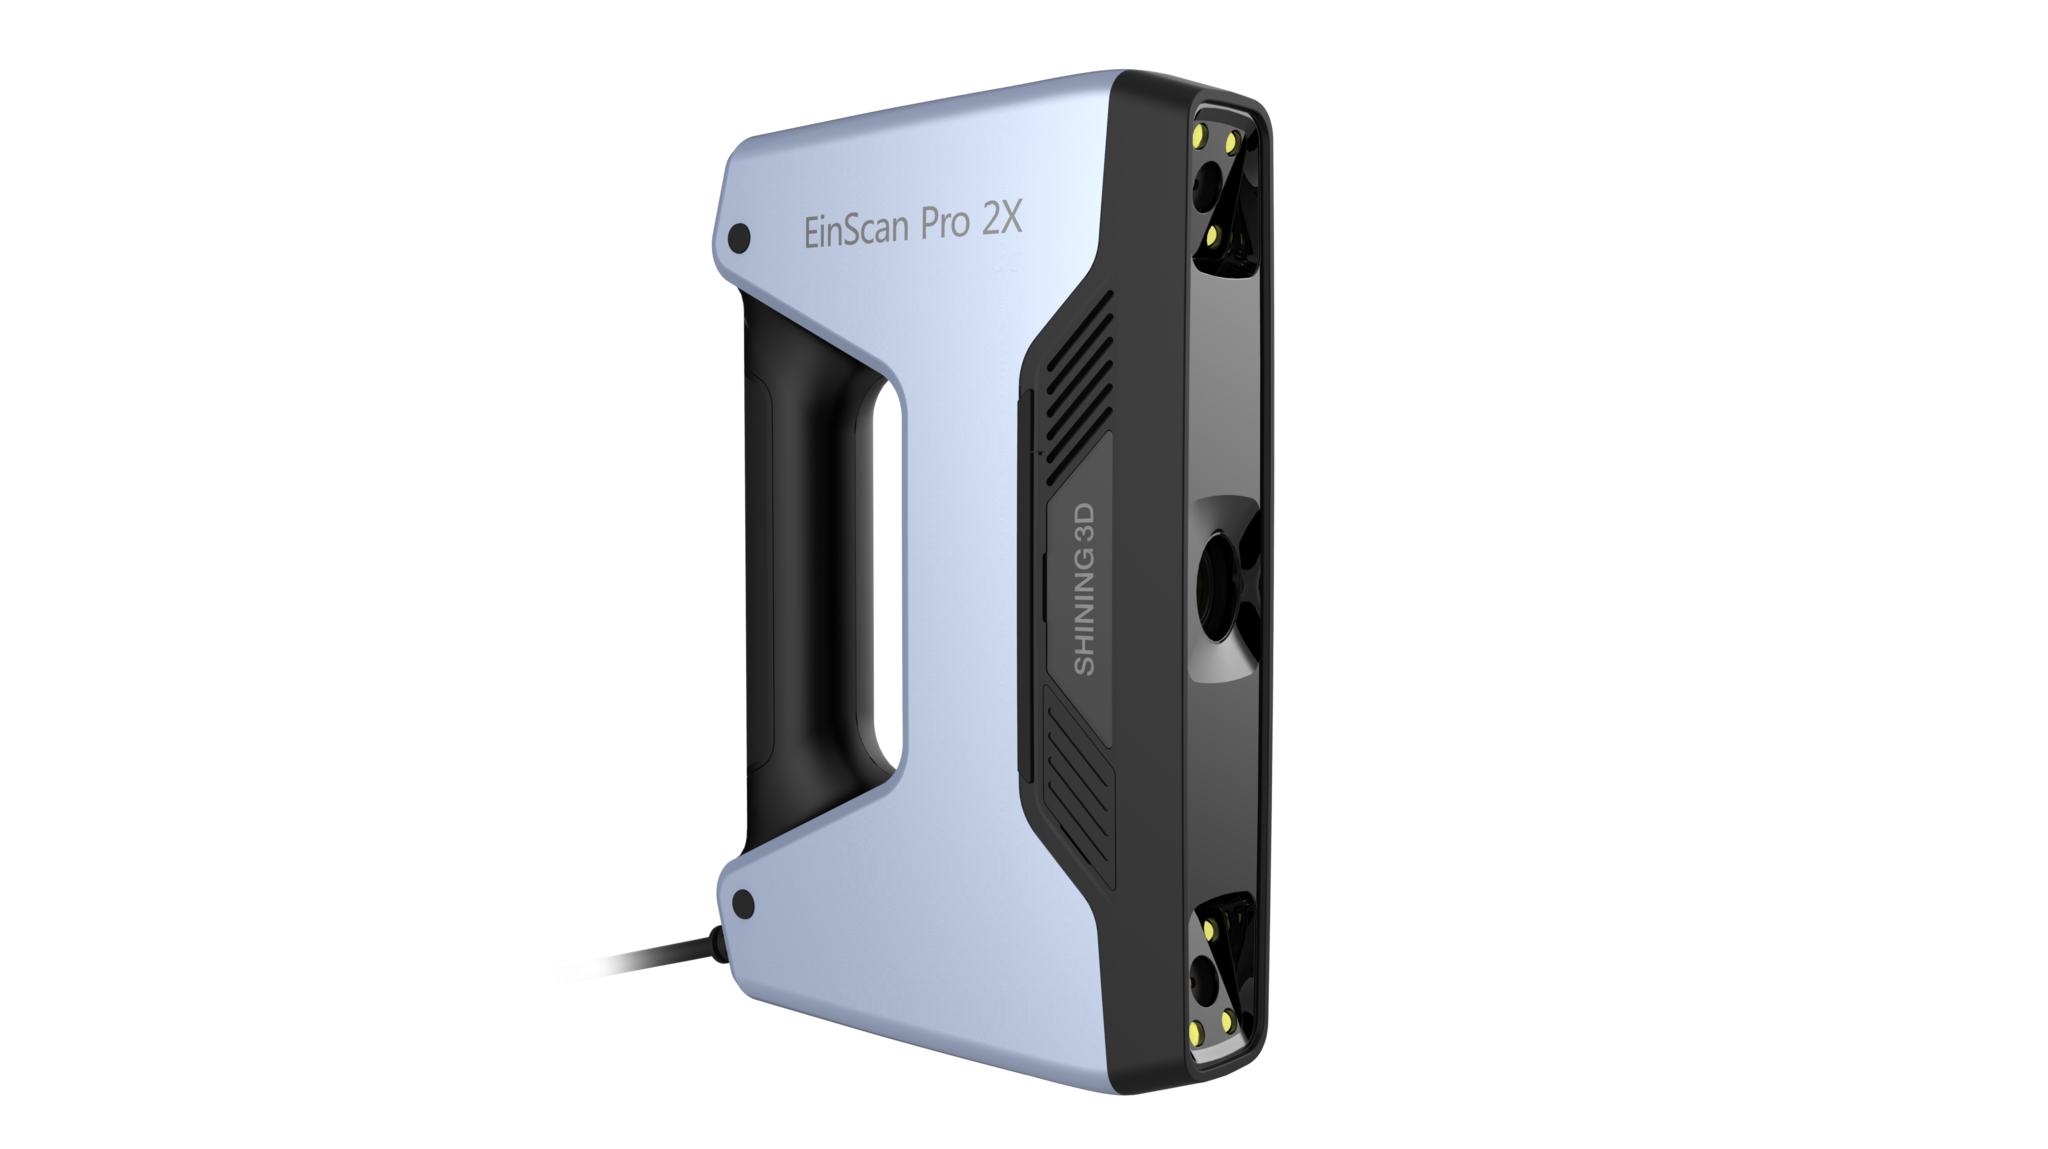 Einscan Pro 2X